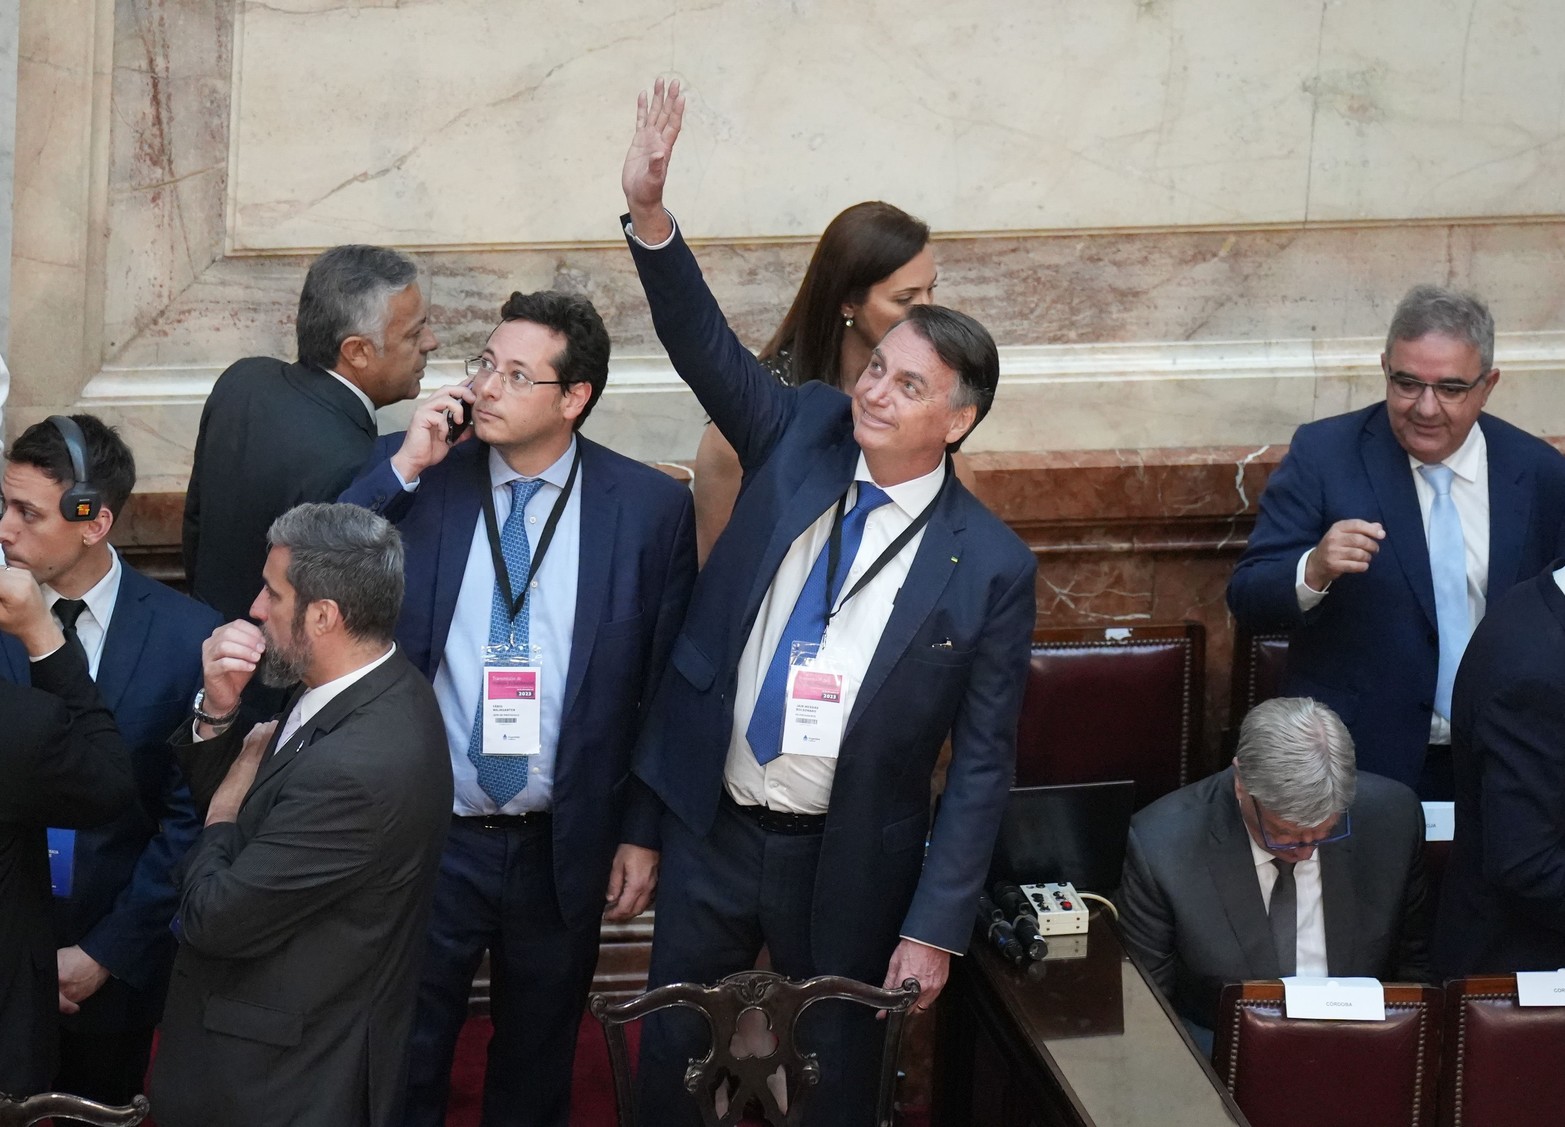 El flamante mandatario recibió los atributos de manos del saliente Alberto Fernández. No habló ante el cuerpo parlamentario, sino después en la plaza